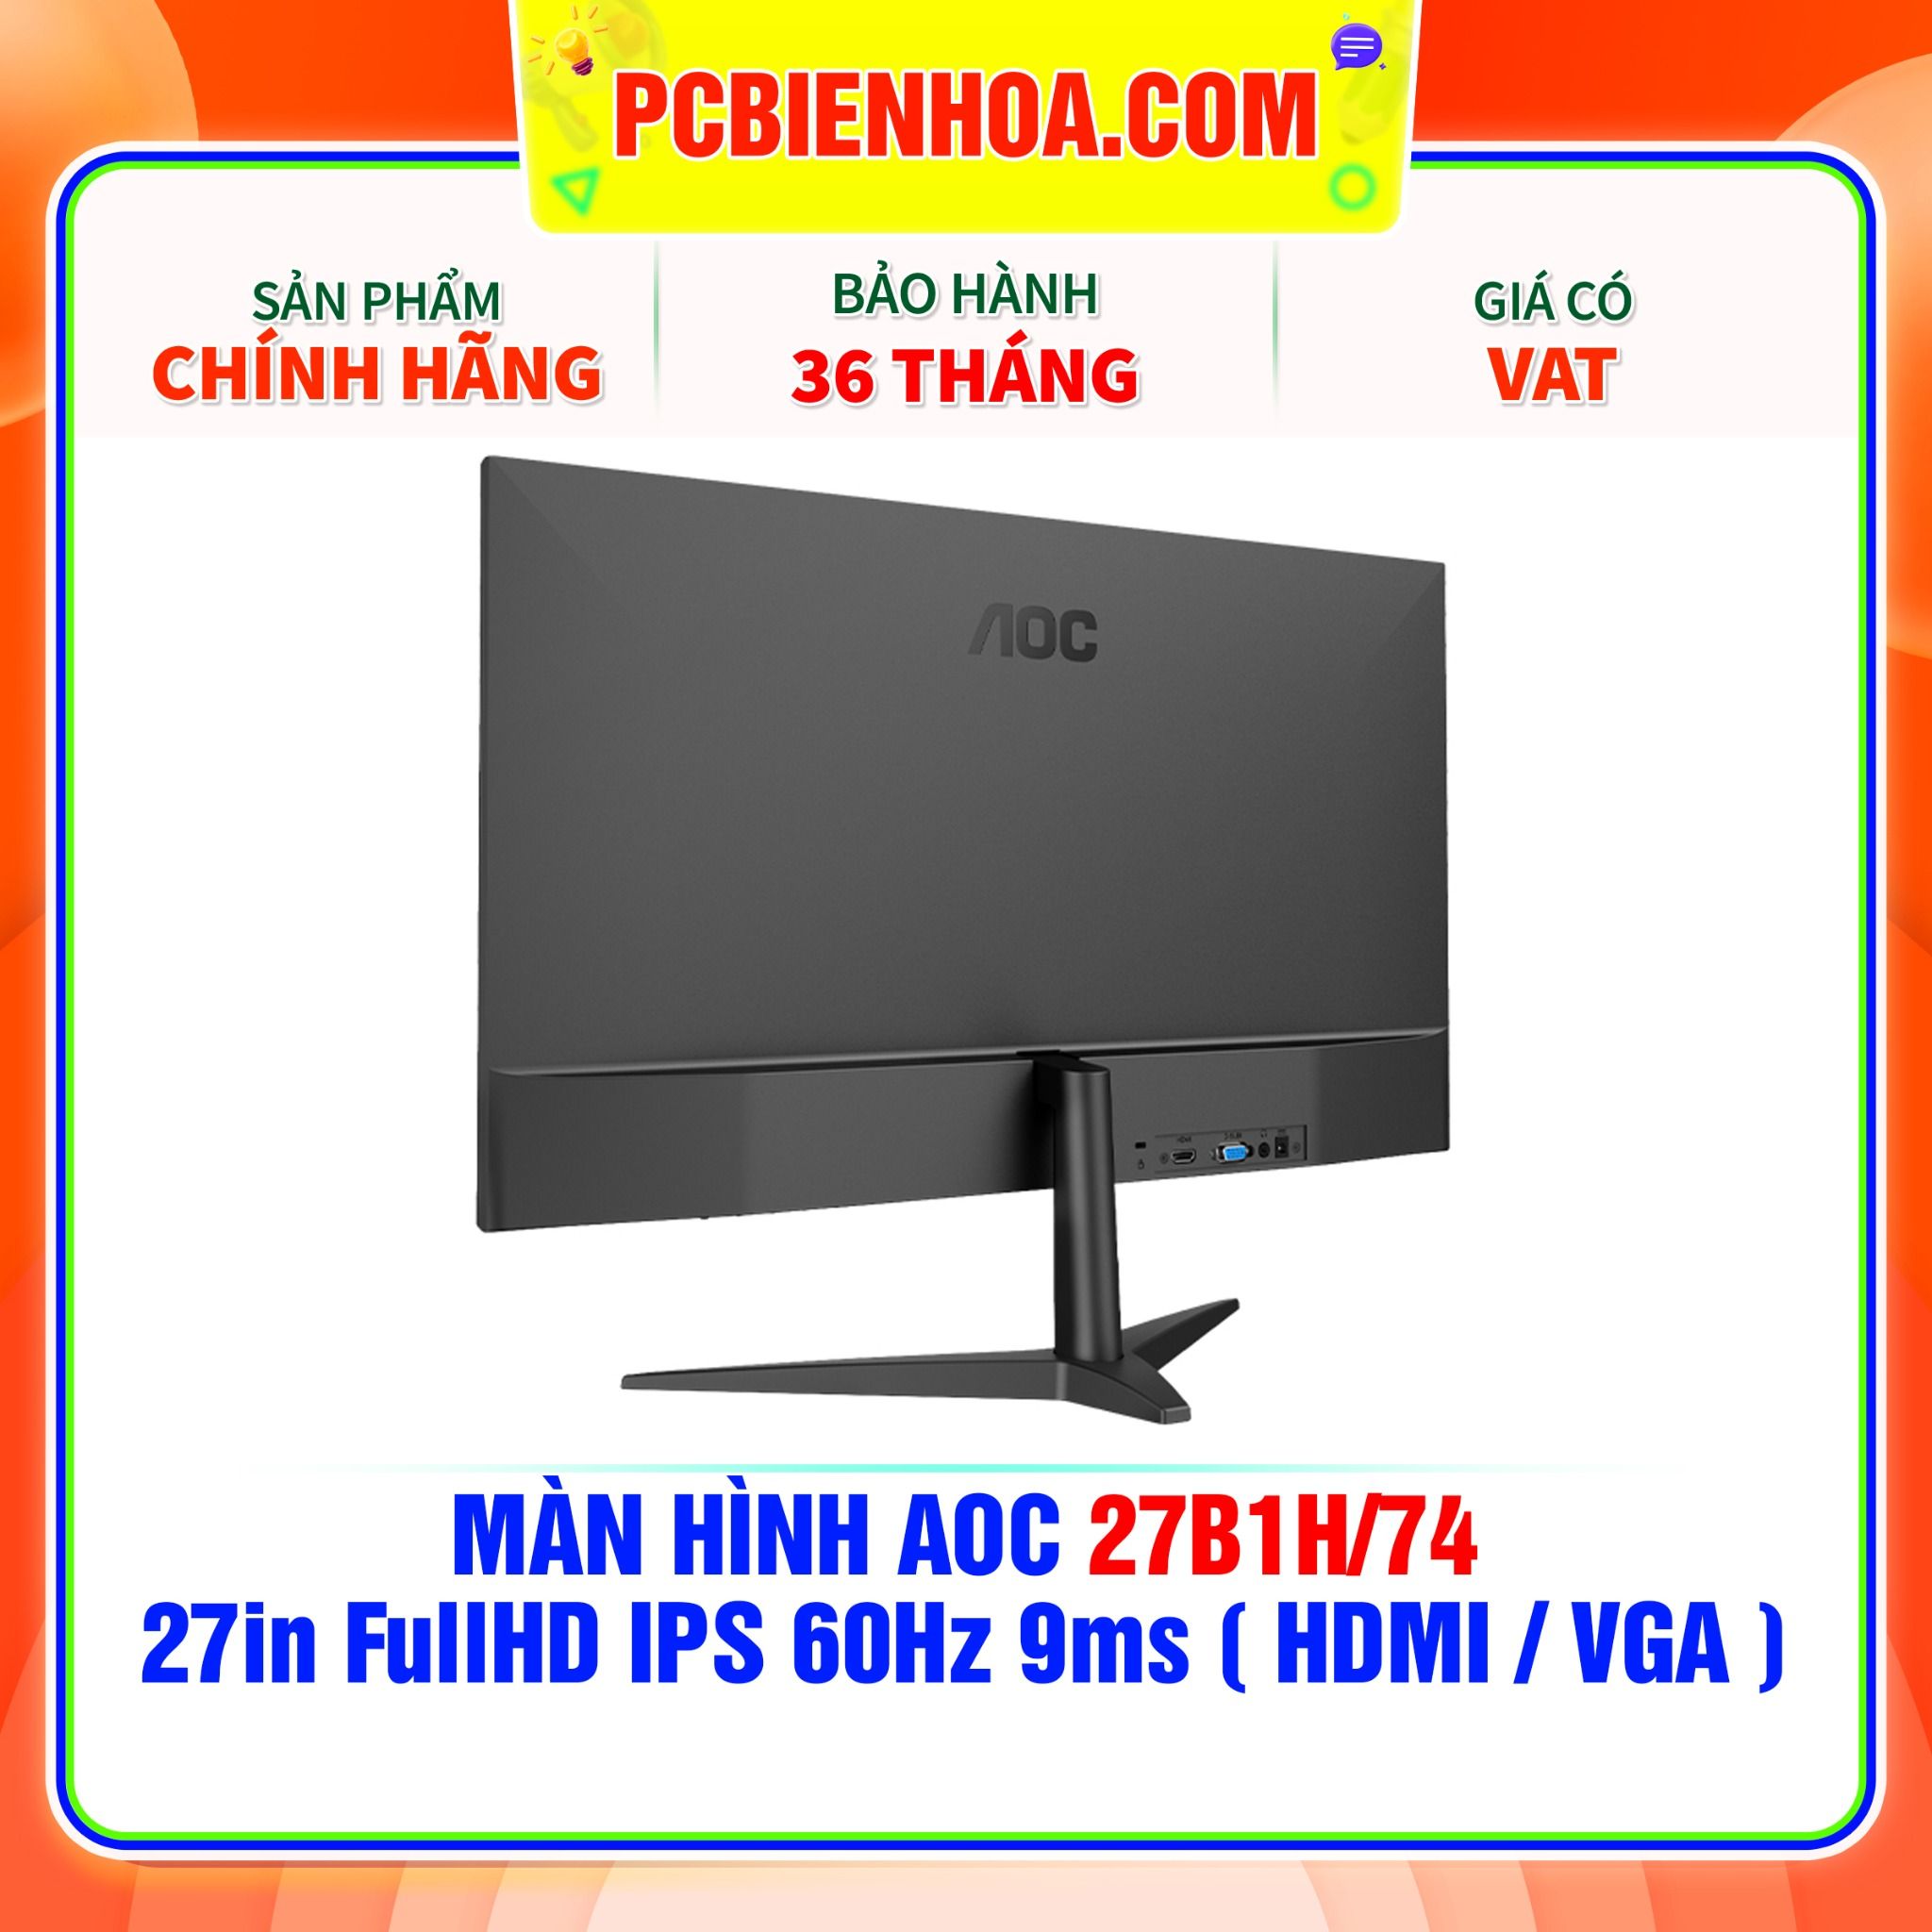  MÀN HÌNH AIWA MD2404-V 24in FullHD IPS 180Hz 1ms ( DP / HDMI ) 